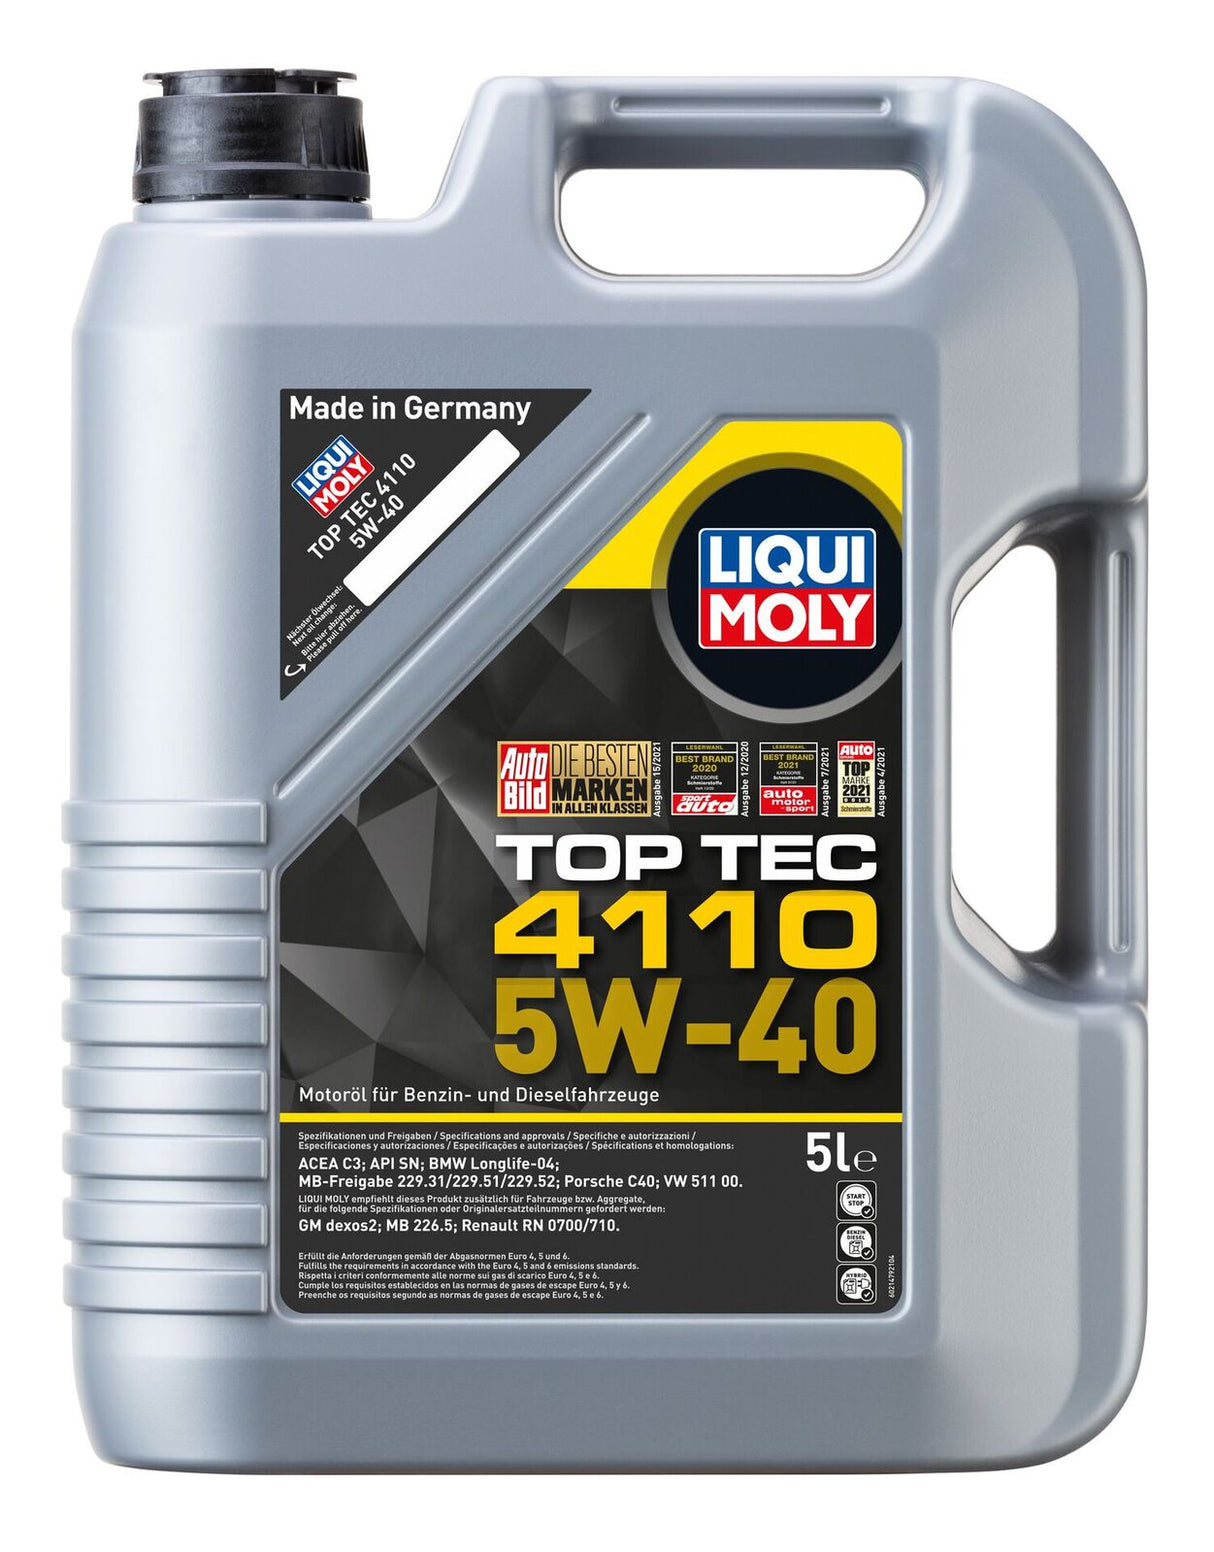 TOP TEC 4110 5W-40 5L - LIQUI MOLY | Universal Auto Spares